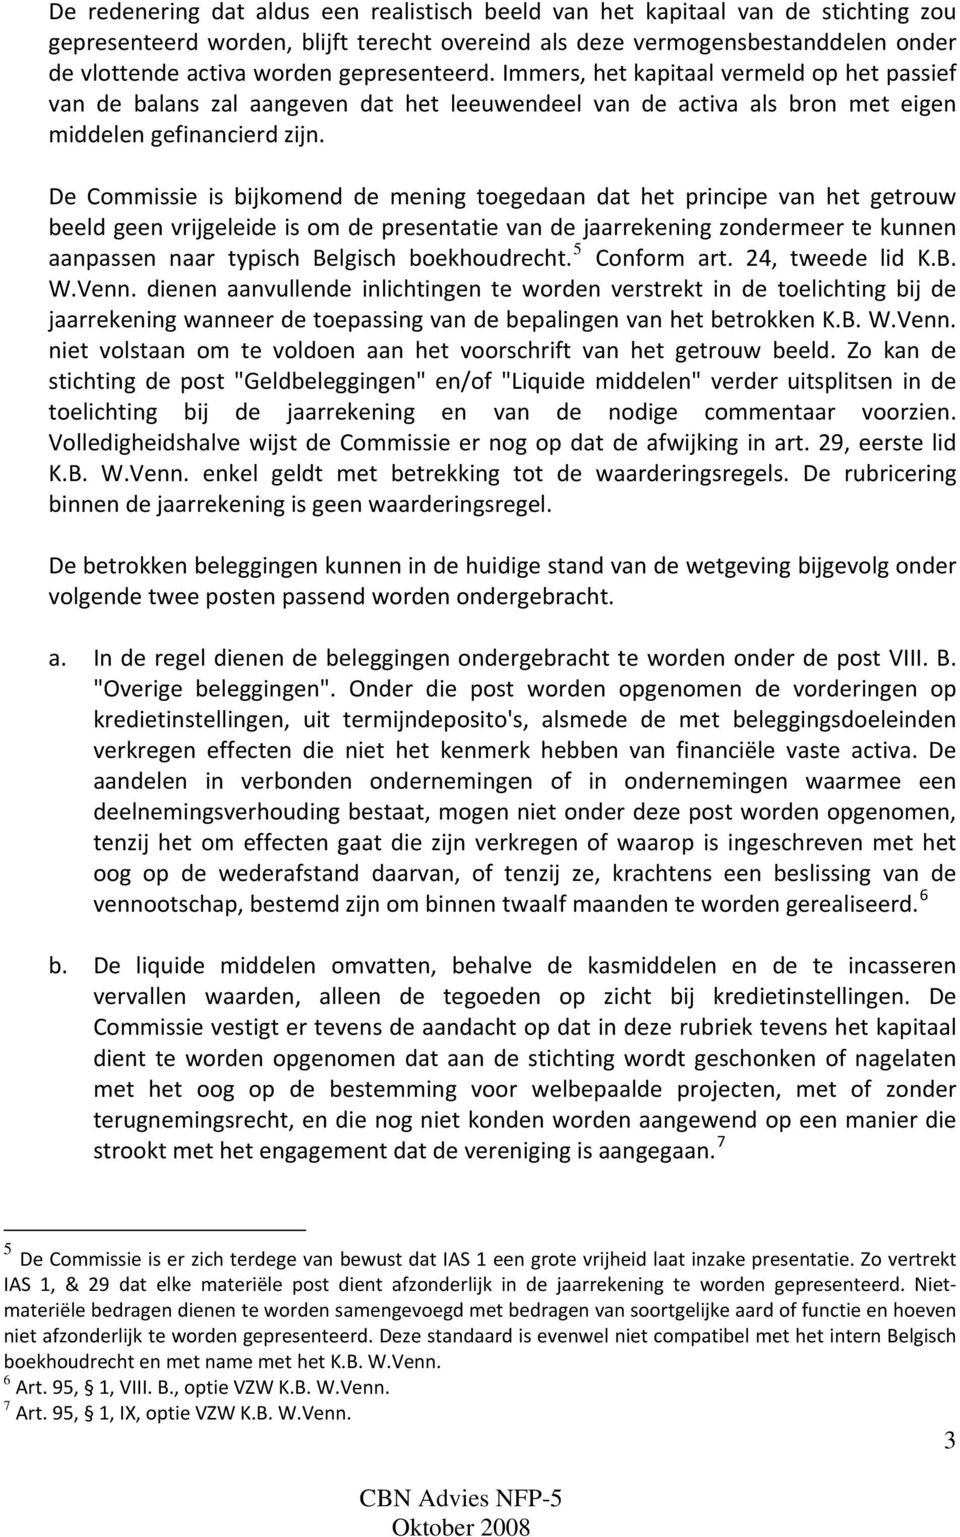 De Commissie is bijkomend de mening toegedaan dat het principe van het getrouw beeld geen vrijgeleide is om de presentatie van de jaarrekening zondermeer te kunnen aanpassen naar typisch Belgisch